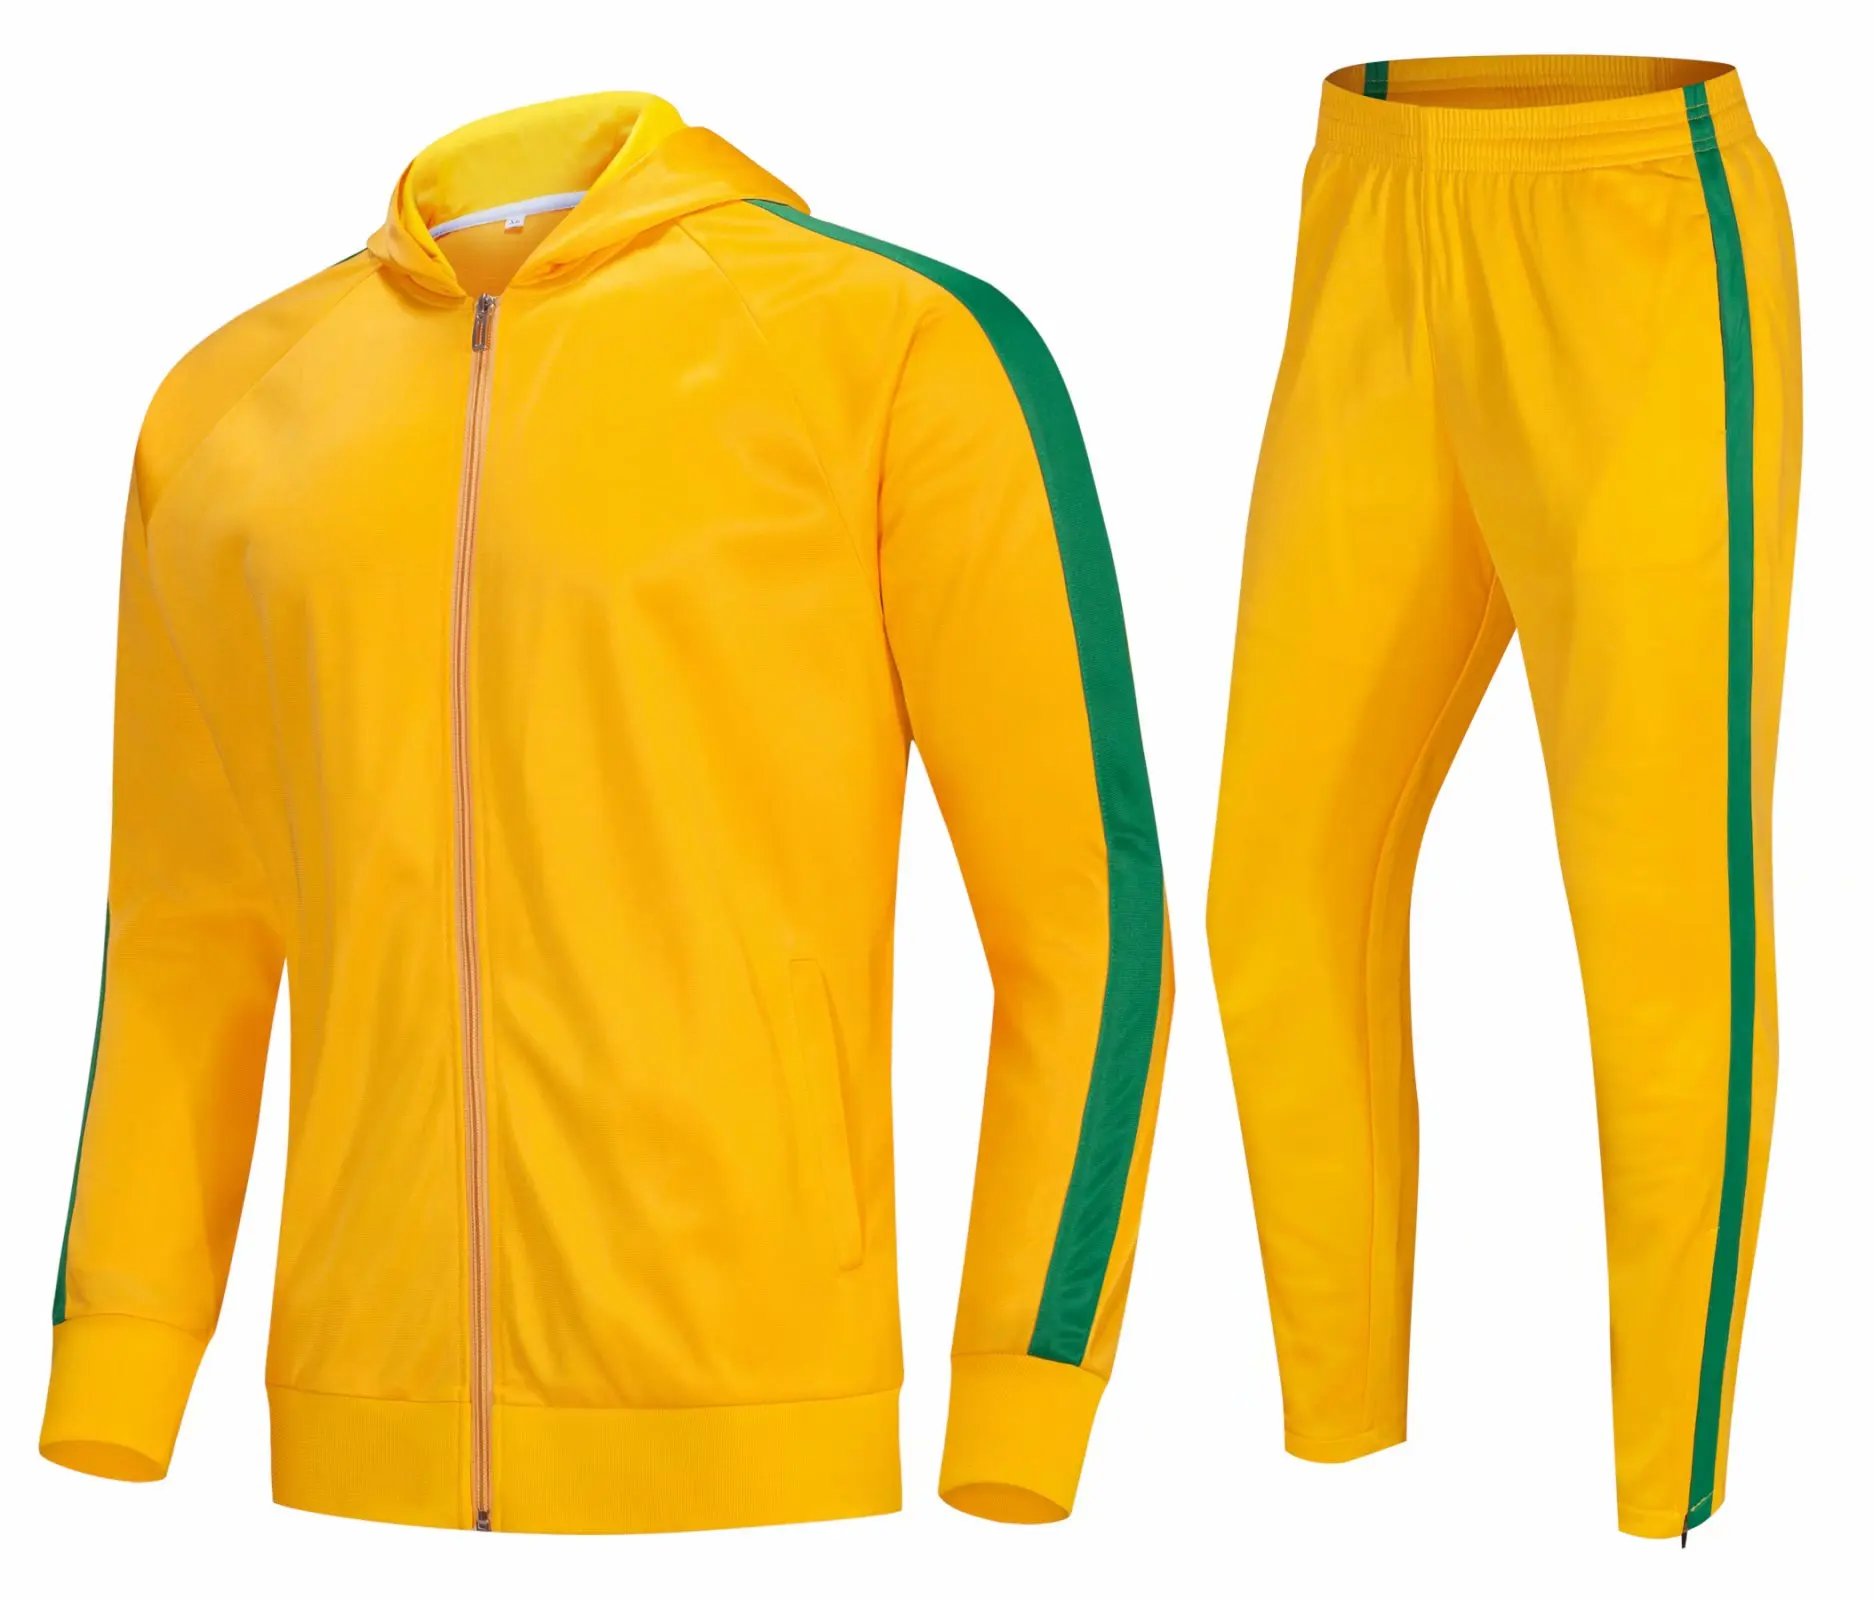 

2020/2021 Новый взрослый футбол тренировочные майки одежда с длинным рукавом комплекты Футбол Для мужчин Куртки для бега спорта, Униформа, кост...